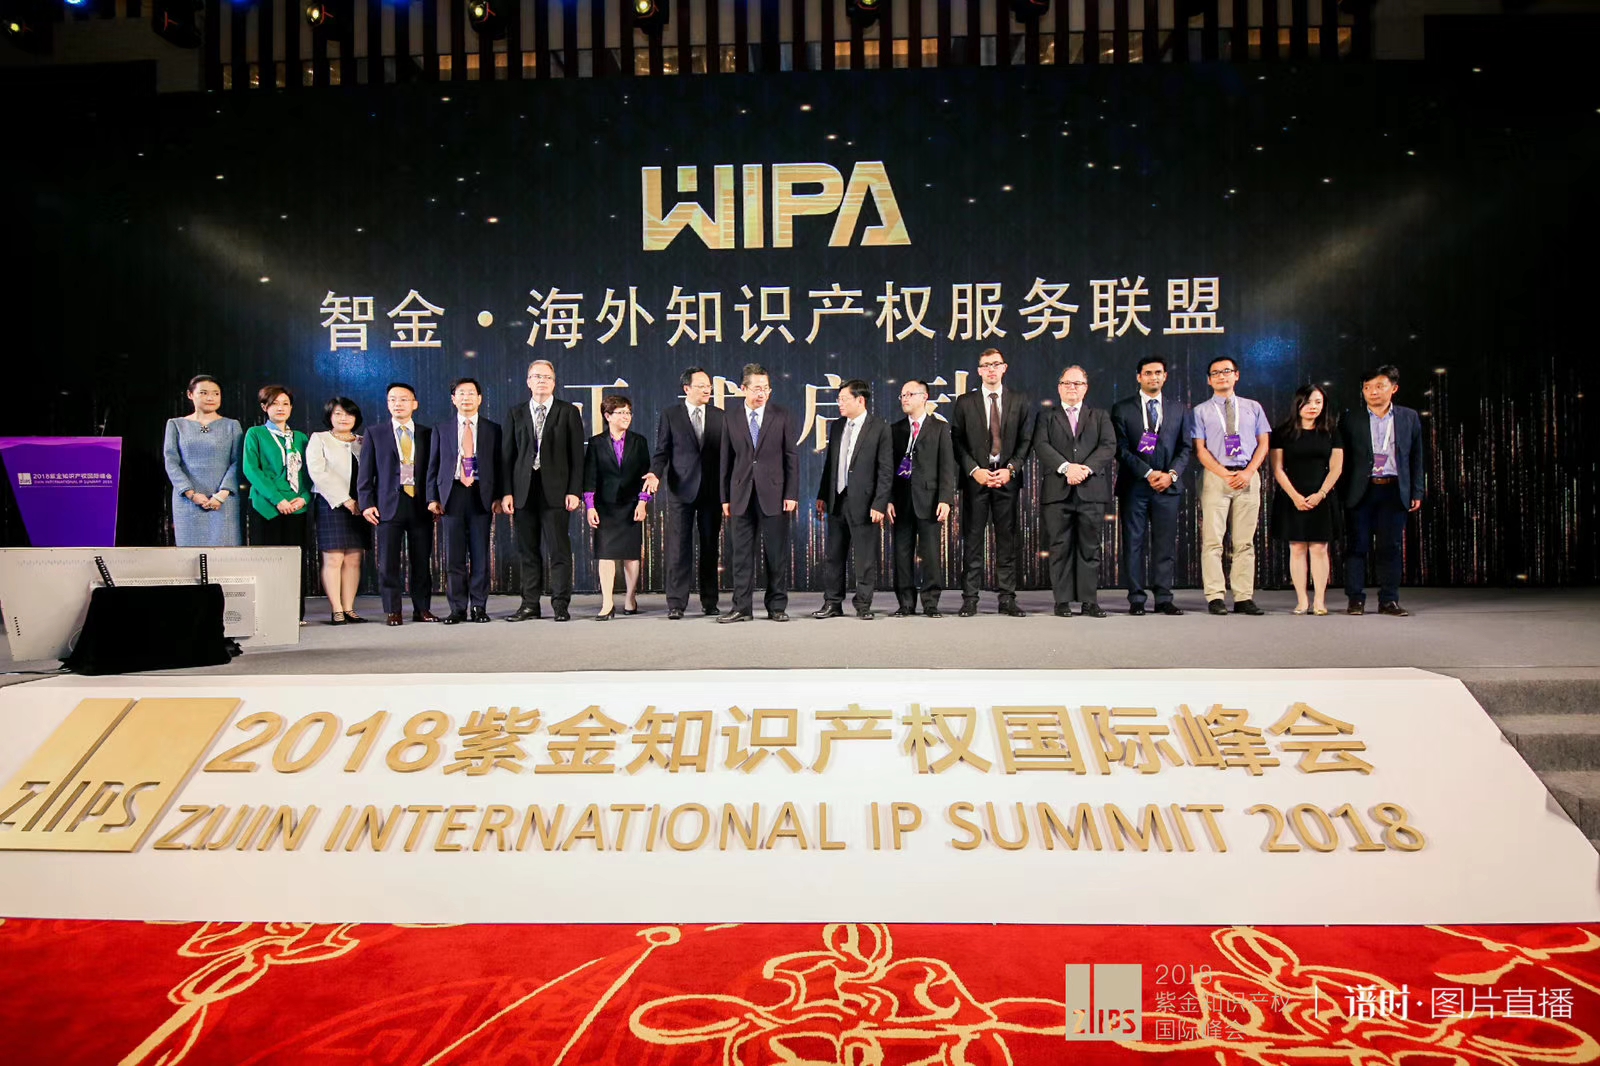 Zijin International IP Summit 2018